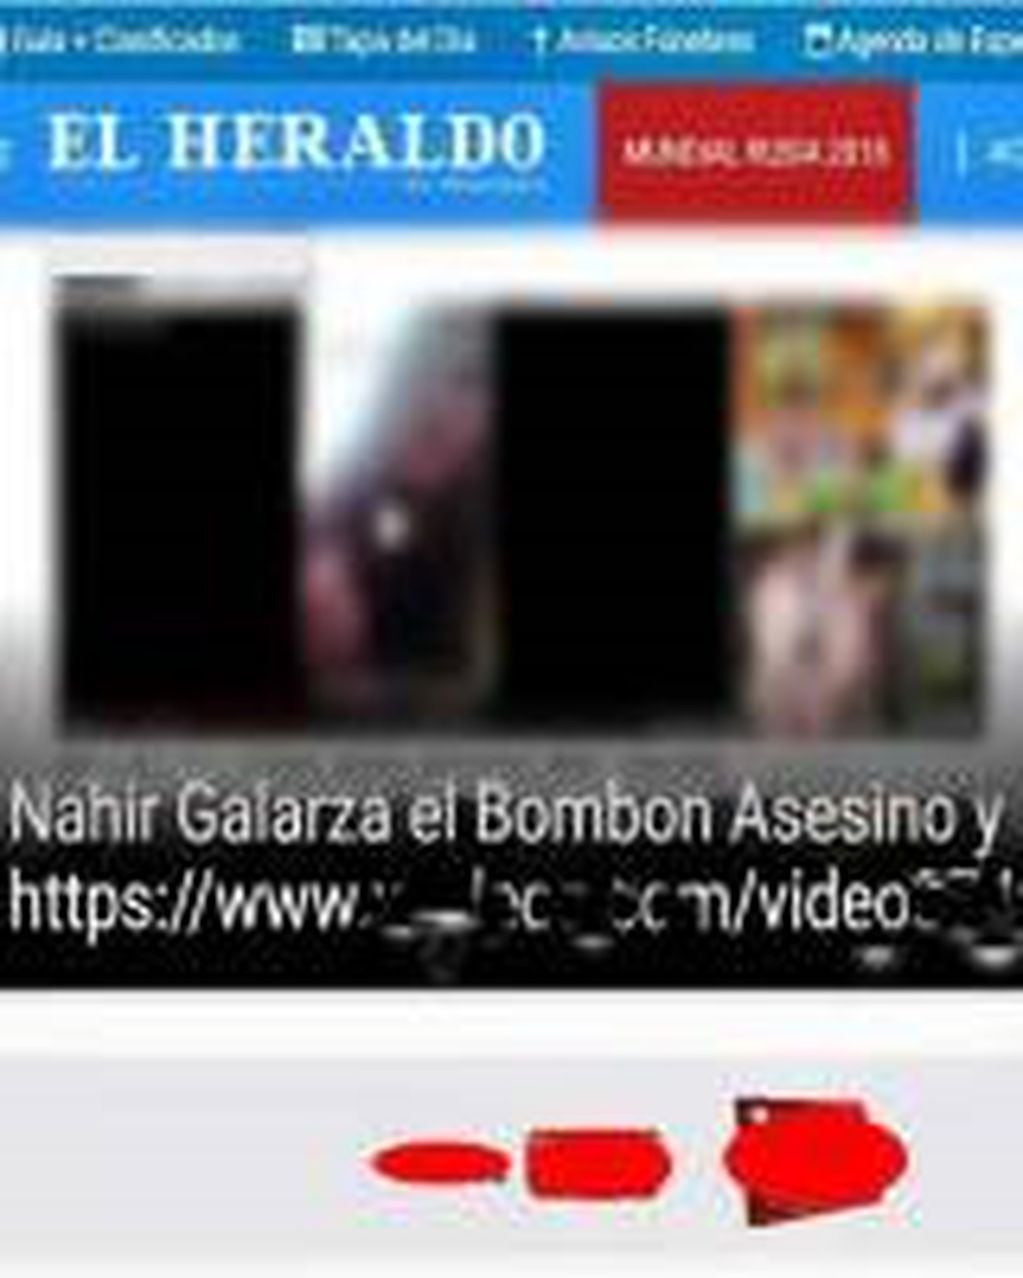 La portada online del diario "El Heraldo" de Concordia apareció hackeada este viernes con el video prohibido de Nahir Galarza y Fernando Pastorizzo.